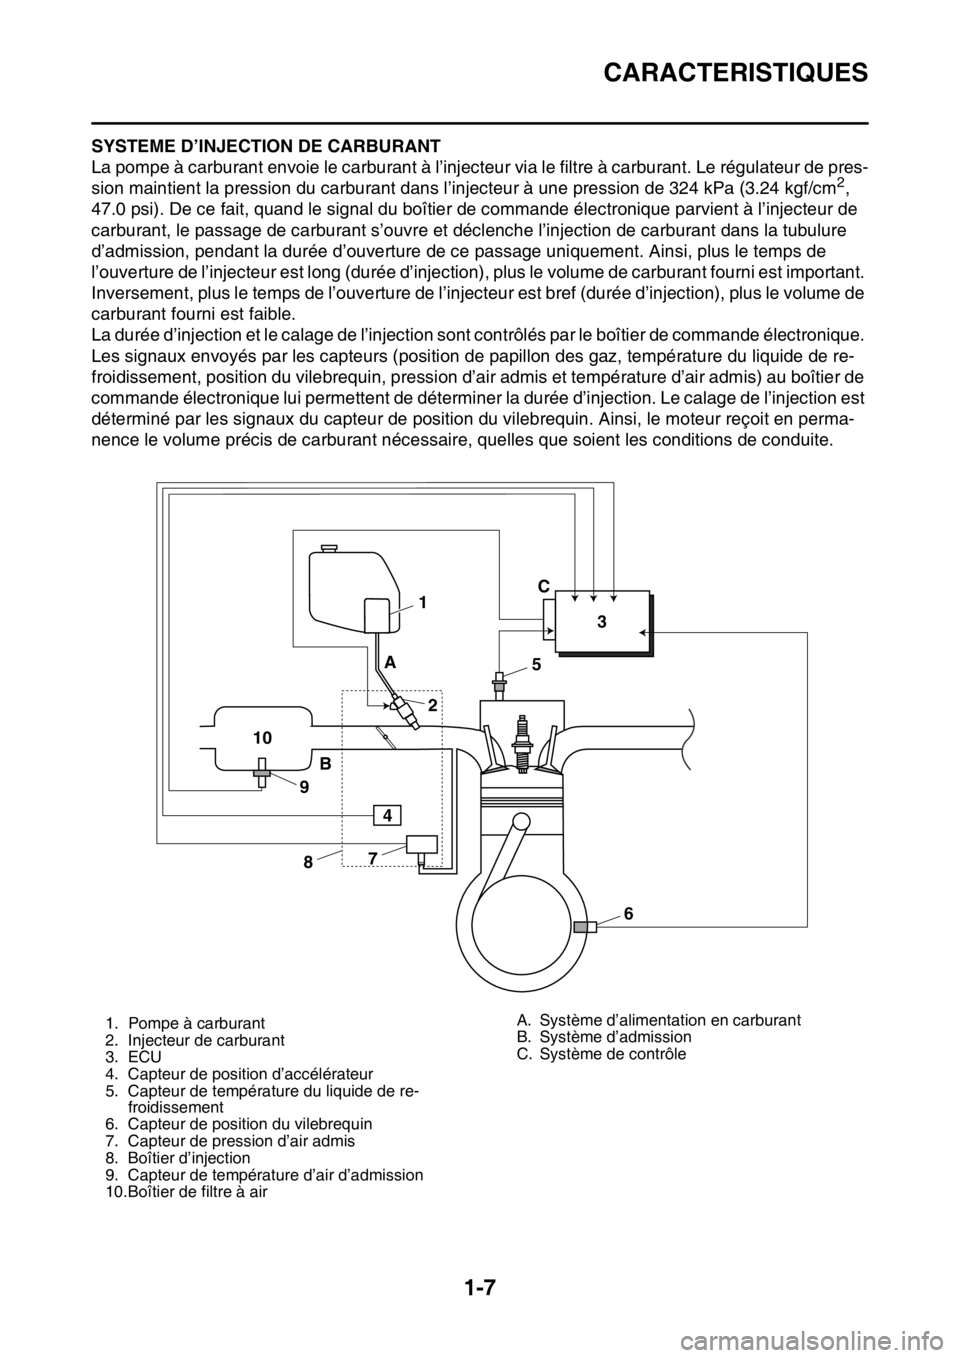 YAMAHA YZ250F 2015  Notices Demploi (in French) CARACTERISTIQUES
1-7
FAS1SM5015SYSTEME D’INJECTION DE CARBURANT
La pompe à carburant envoie le carburant à l’injecteur via le filtre à carburant. Le régulateur de pres-
sion maintient la press